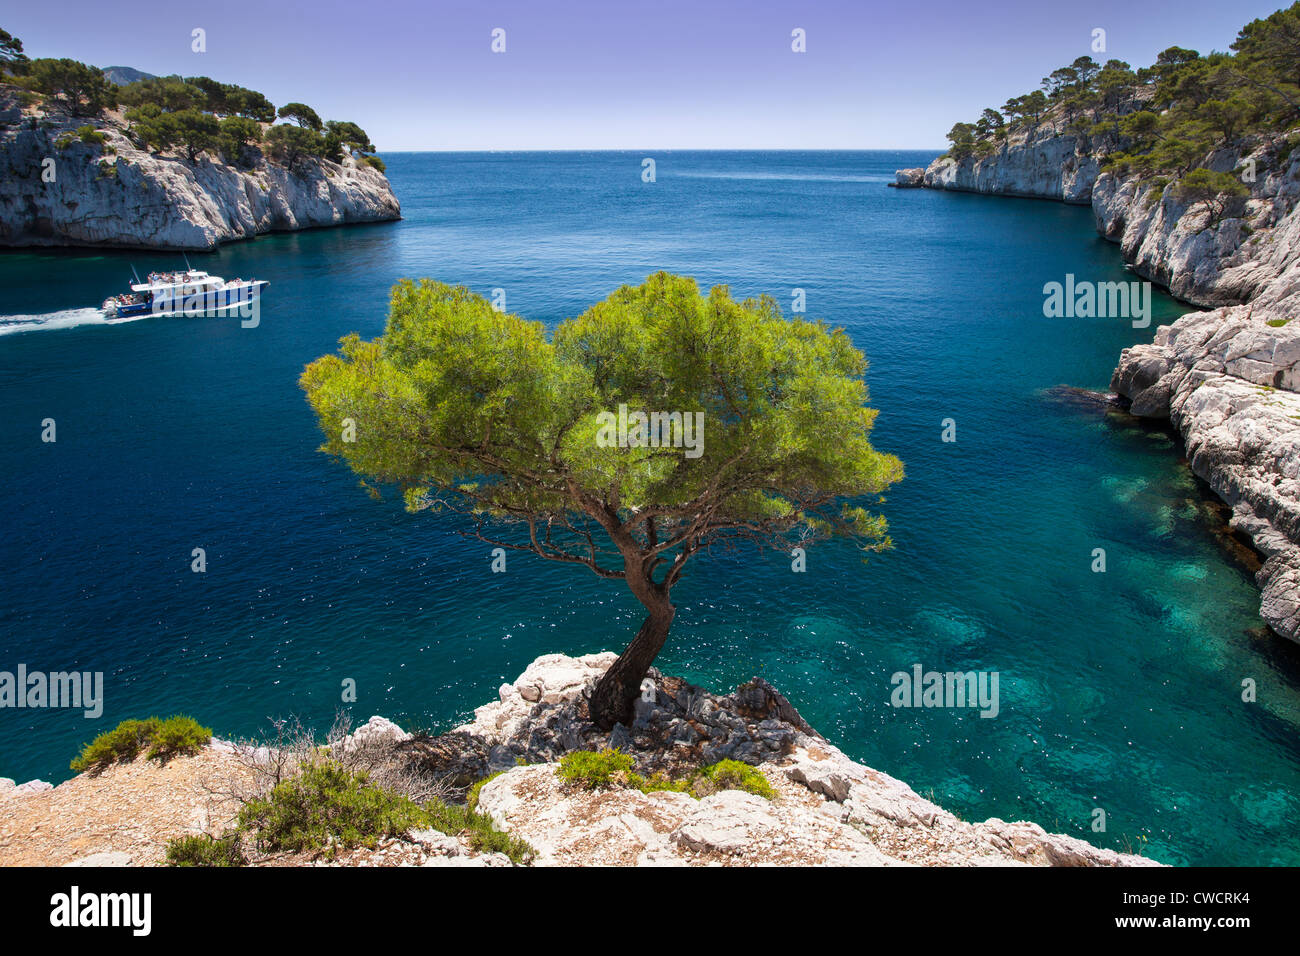 Excursion en bateau voiles passé lone pine tree growing out of roche solide dans les Calanques près de Cassis, Provence France Banque D'Images